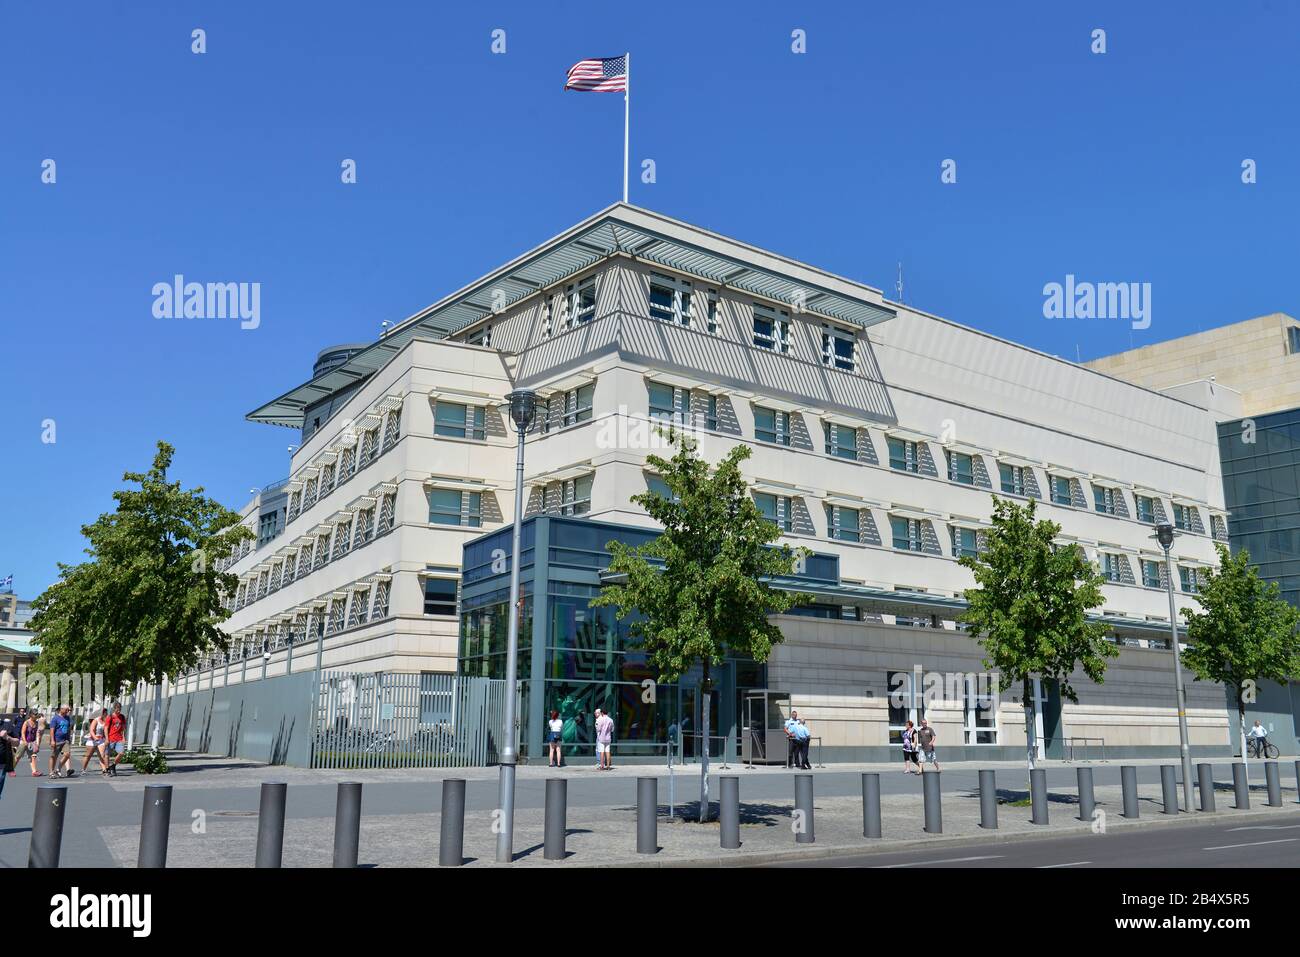 Botschaft der Vereinigten Staaten von Amerika, Ebertstrasse, Mitte, Berlin, Deutschland Foto de stock